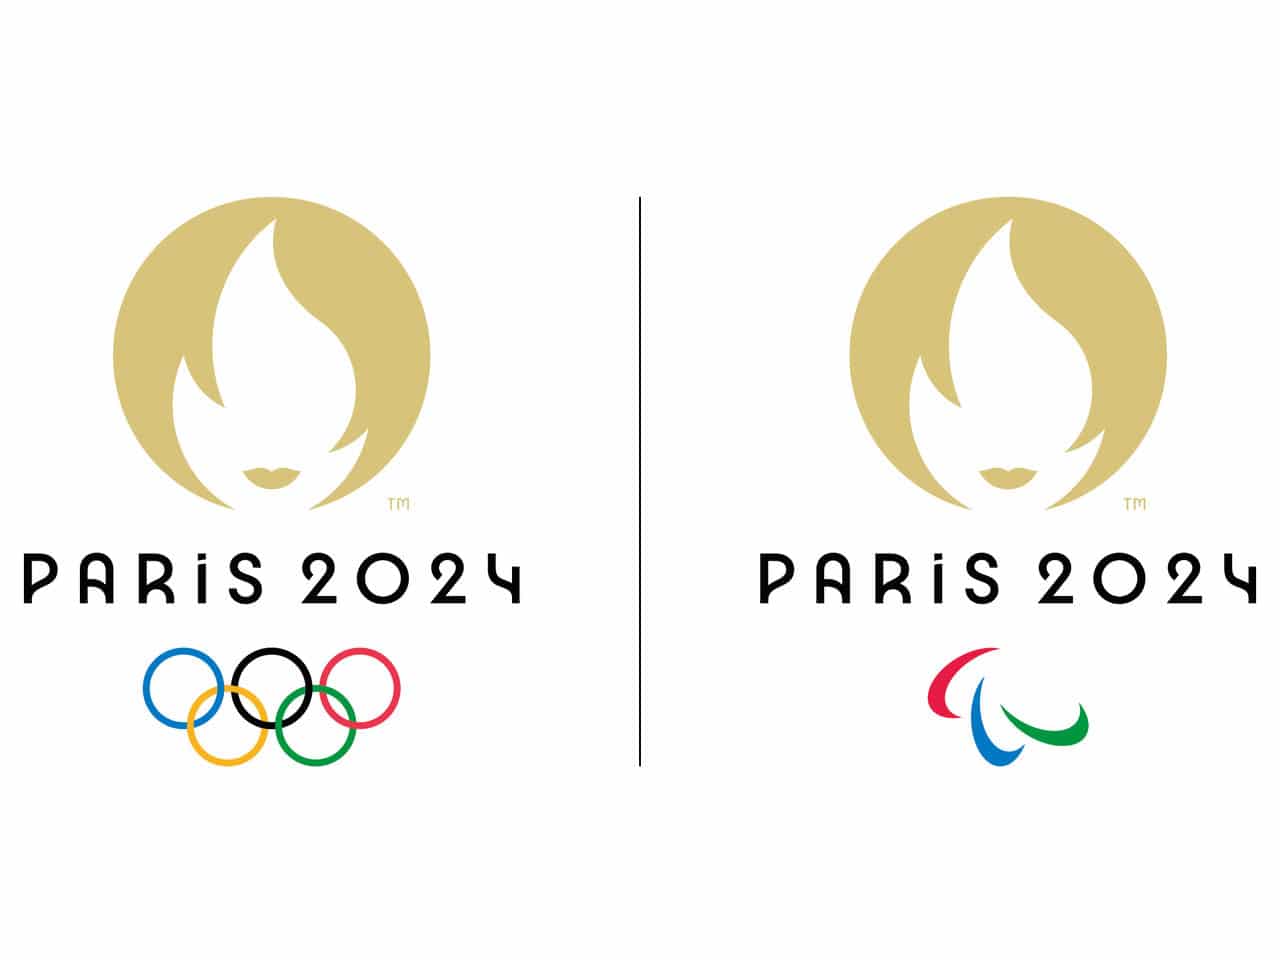 París 2024 Por tercera vez recibirá los Juegos Olímpicos